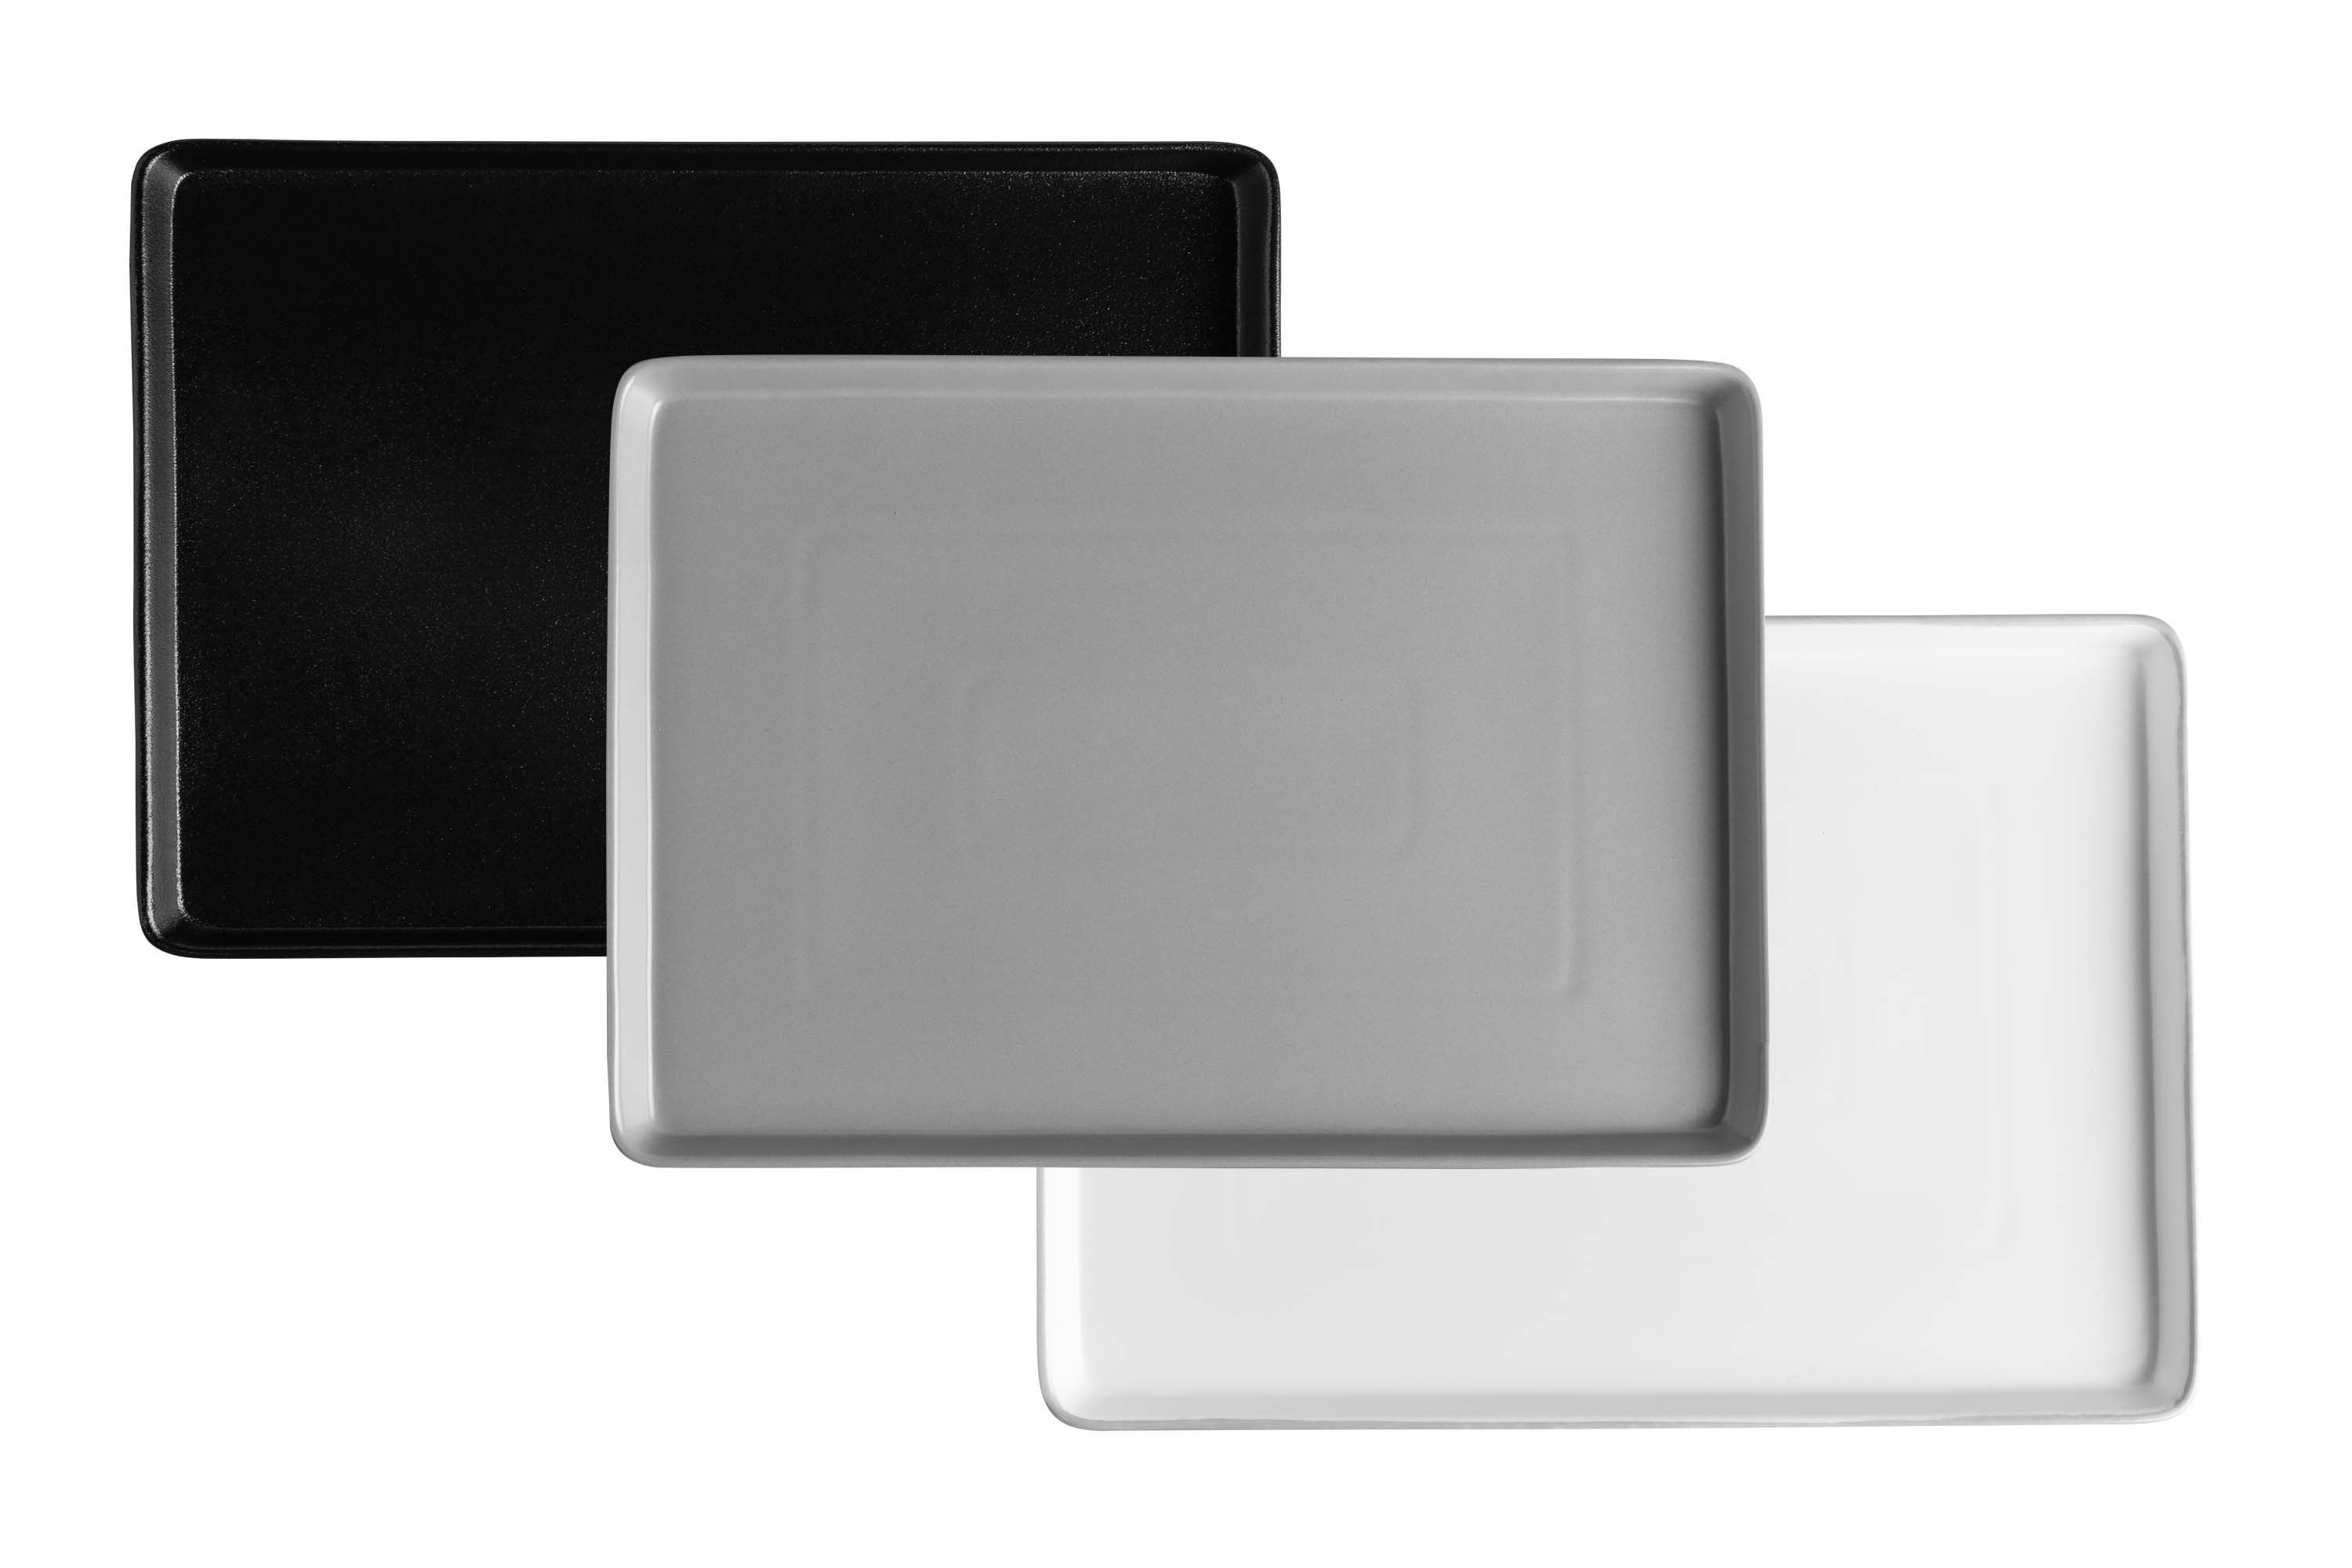 Drei rechteckige Servierplatten in schwarz, weiß und grau